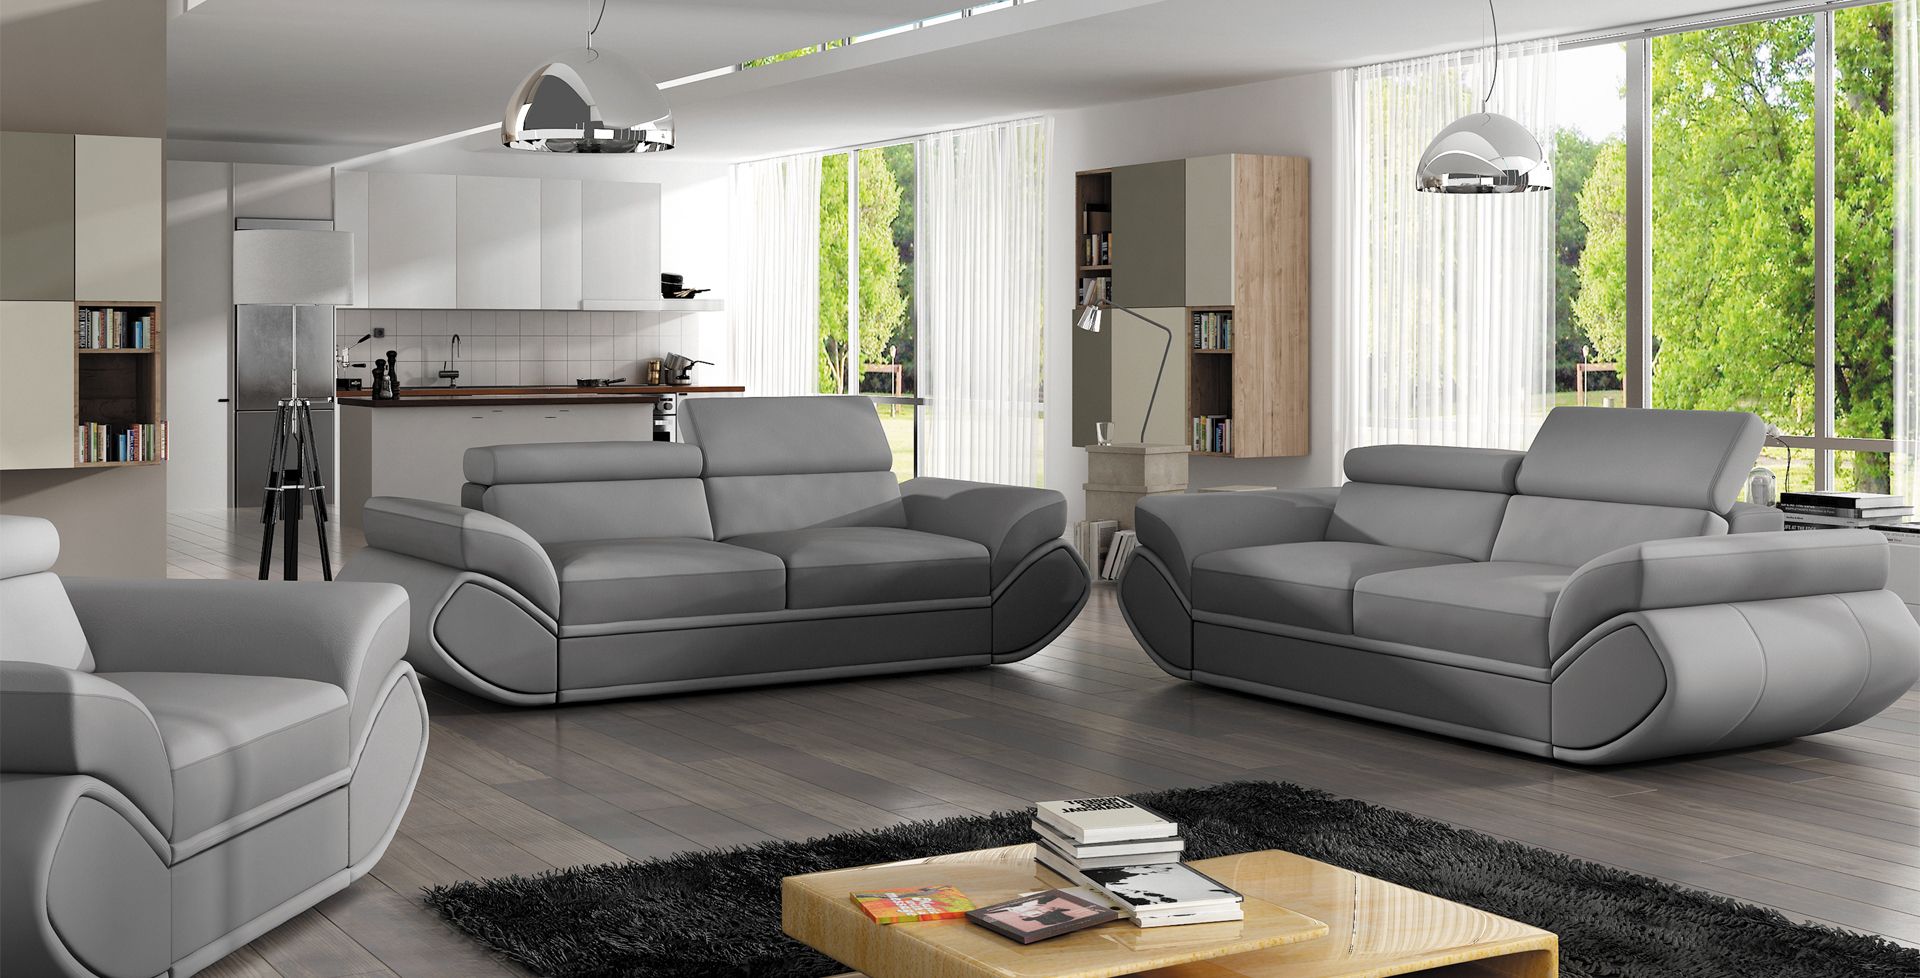 Как правильно выбрать хороший диван: самый качественный и удобный, как выбрать уголовой диван